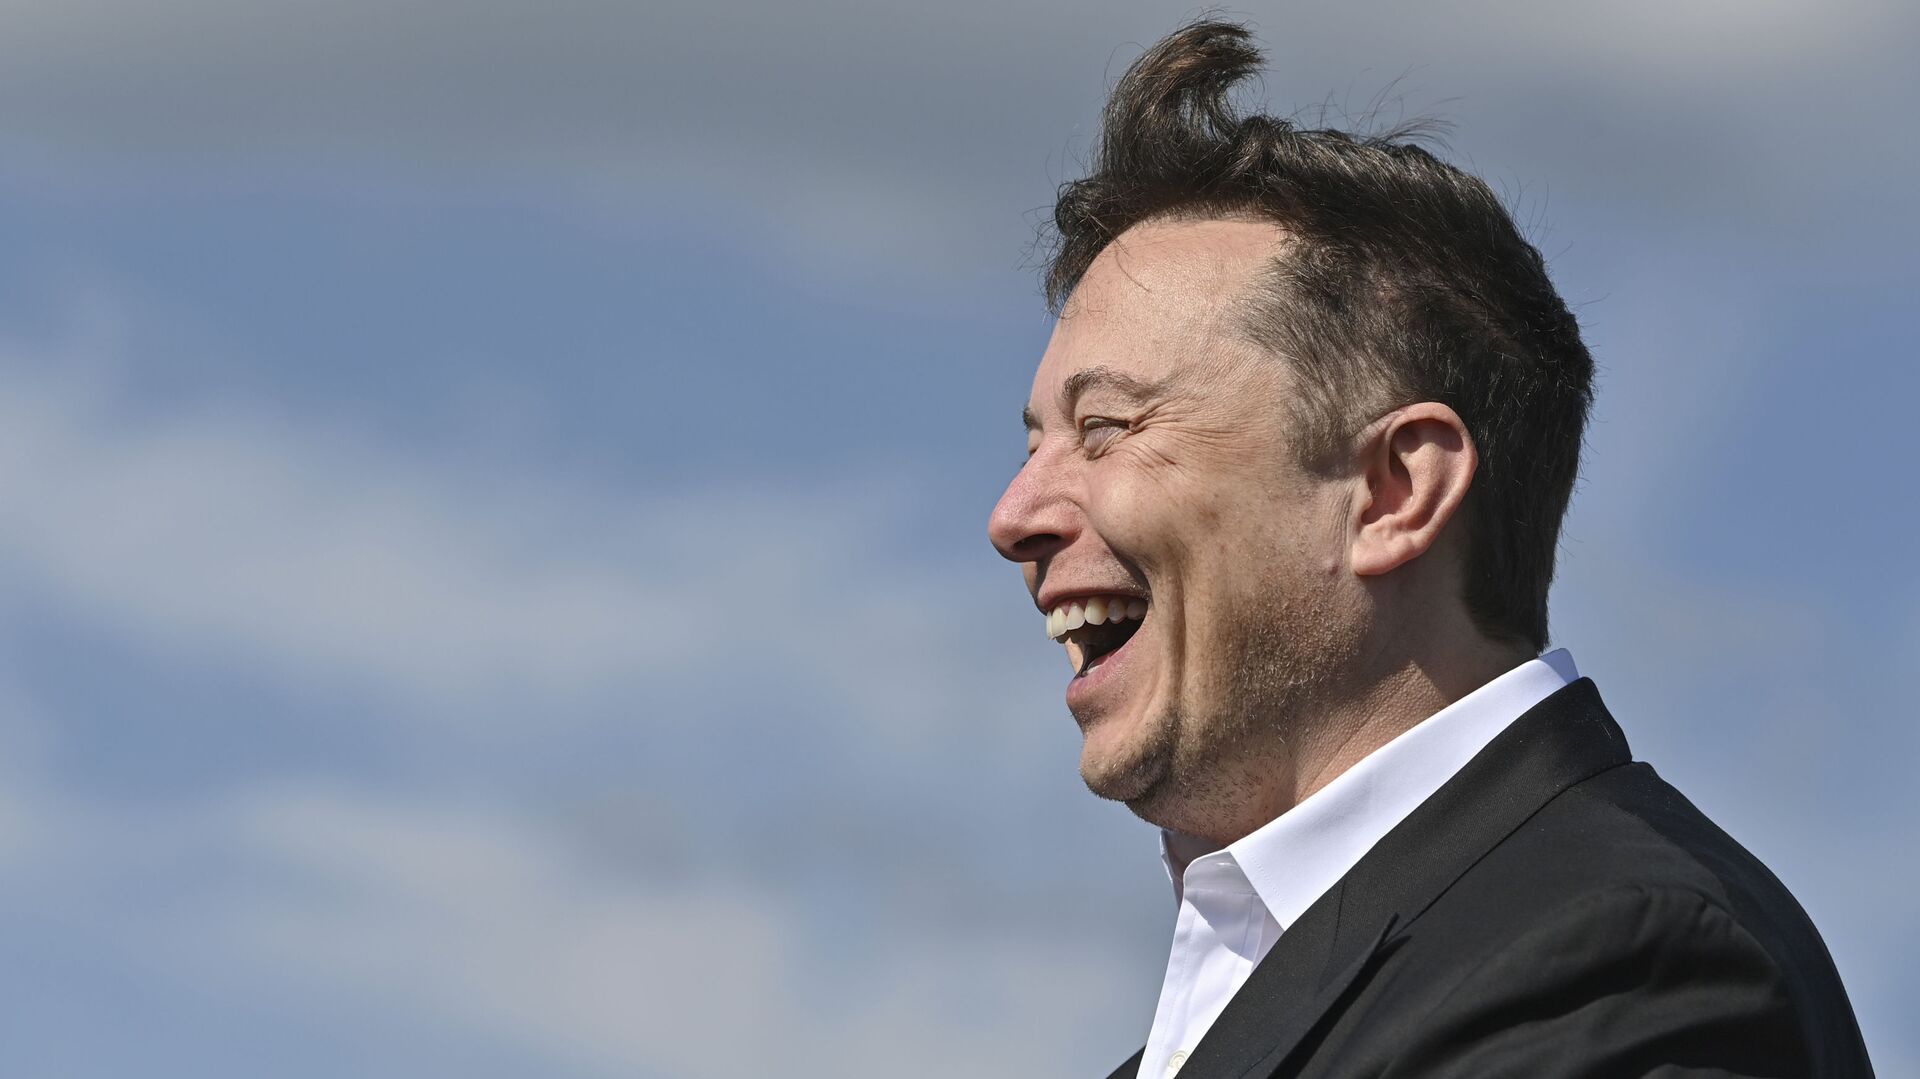 Doanh nhân công nghệ Elon Musk cười khi đến thăm công trường xây dựng Tesla Gigafactory ở Gruenheide gần Berlin, Đức, ngày 3 tháng 9 năm 2020. - Sputnik Việt Nam, 1920, 03.03.2021